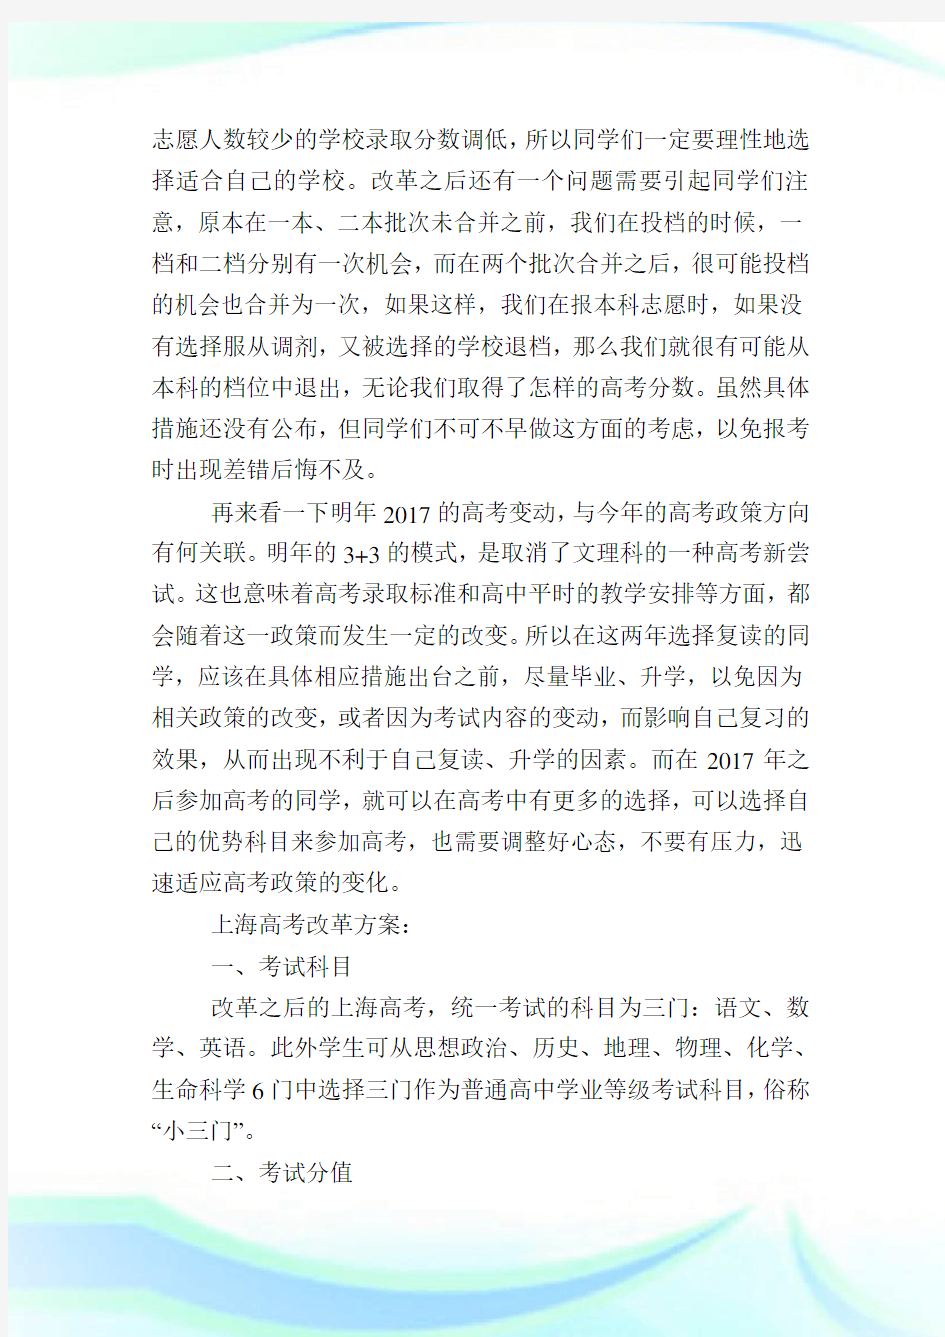 上海高考改革方案,上海高考改革方案详细解读.doc